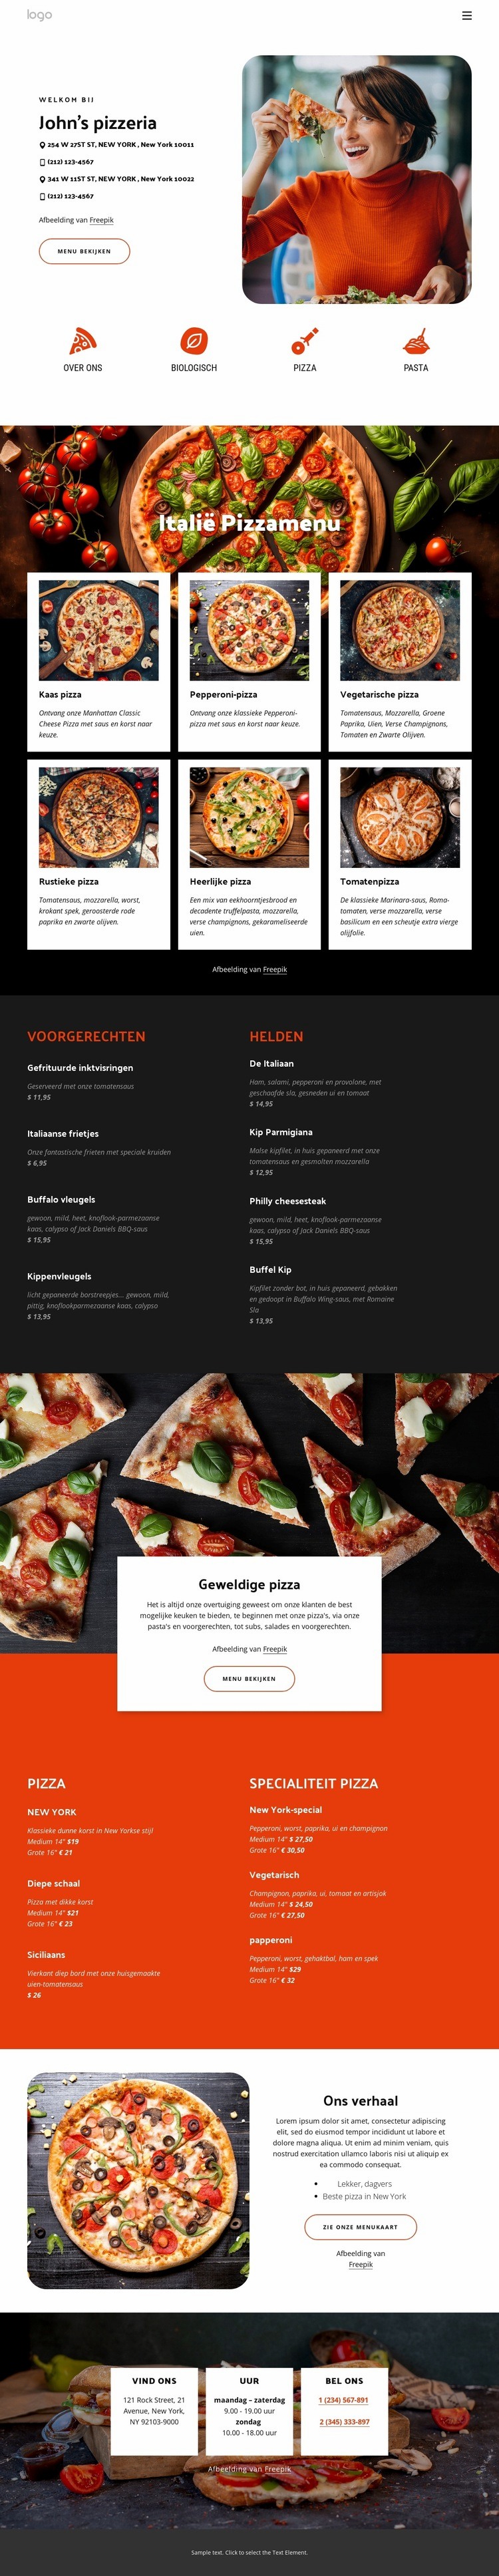 Pizzeria Website ontwerp